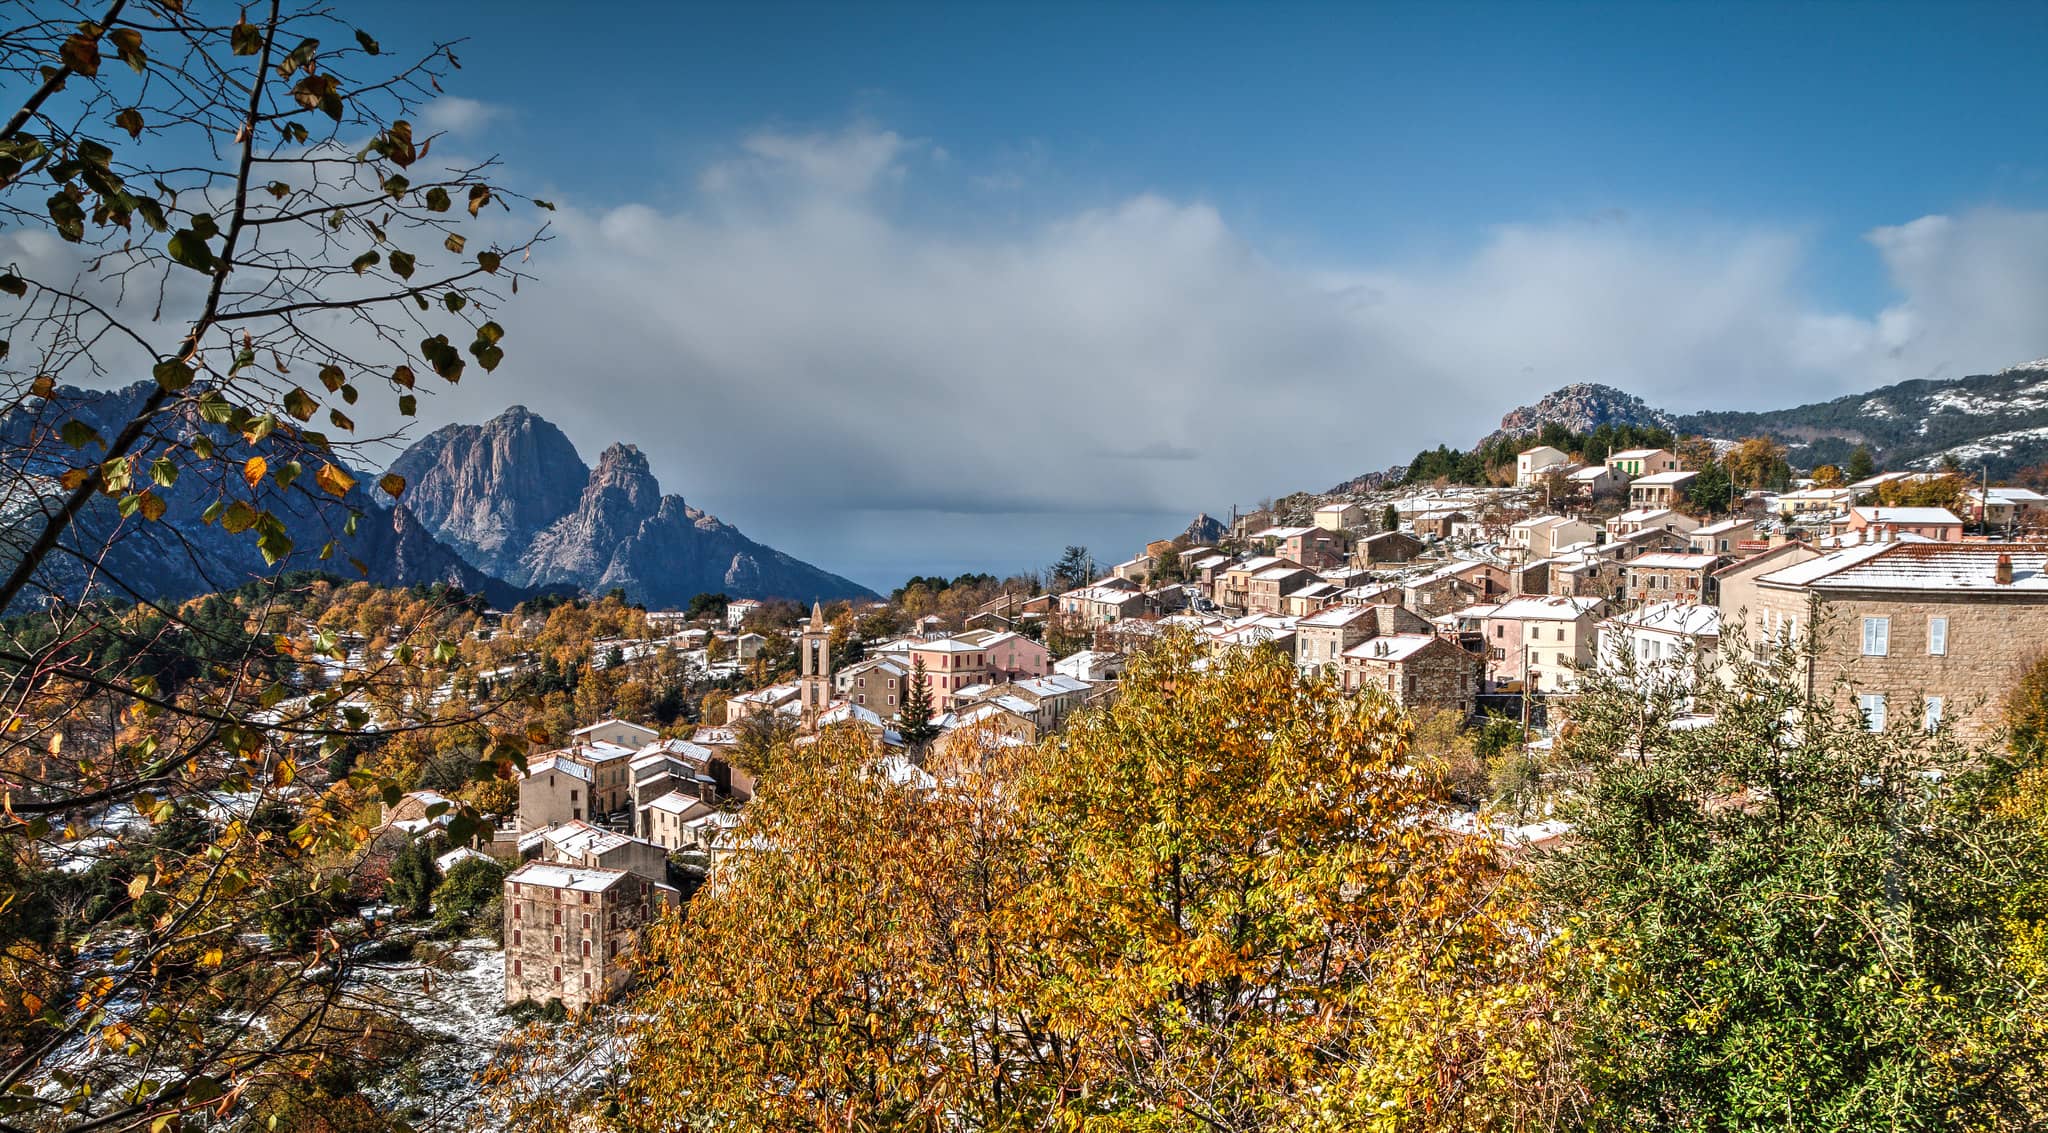 Paysage d'Evisa en Corse. Feuillages, maisons et montagnes au loin.